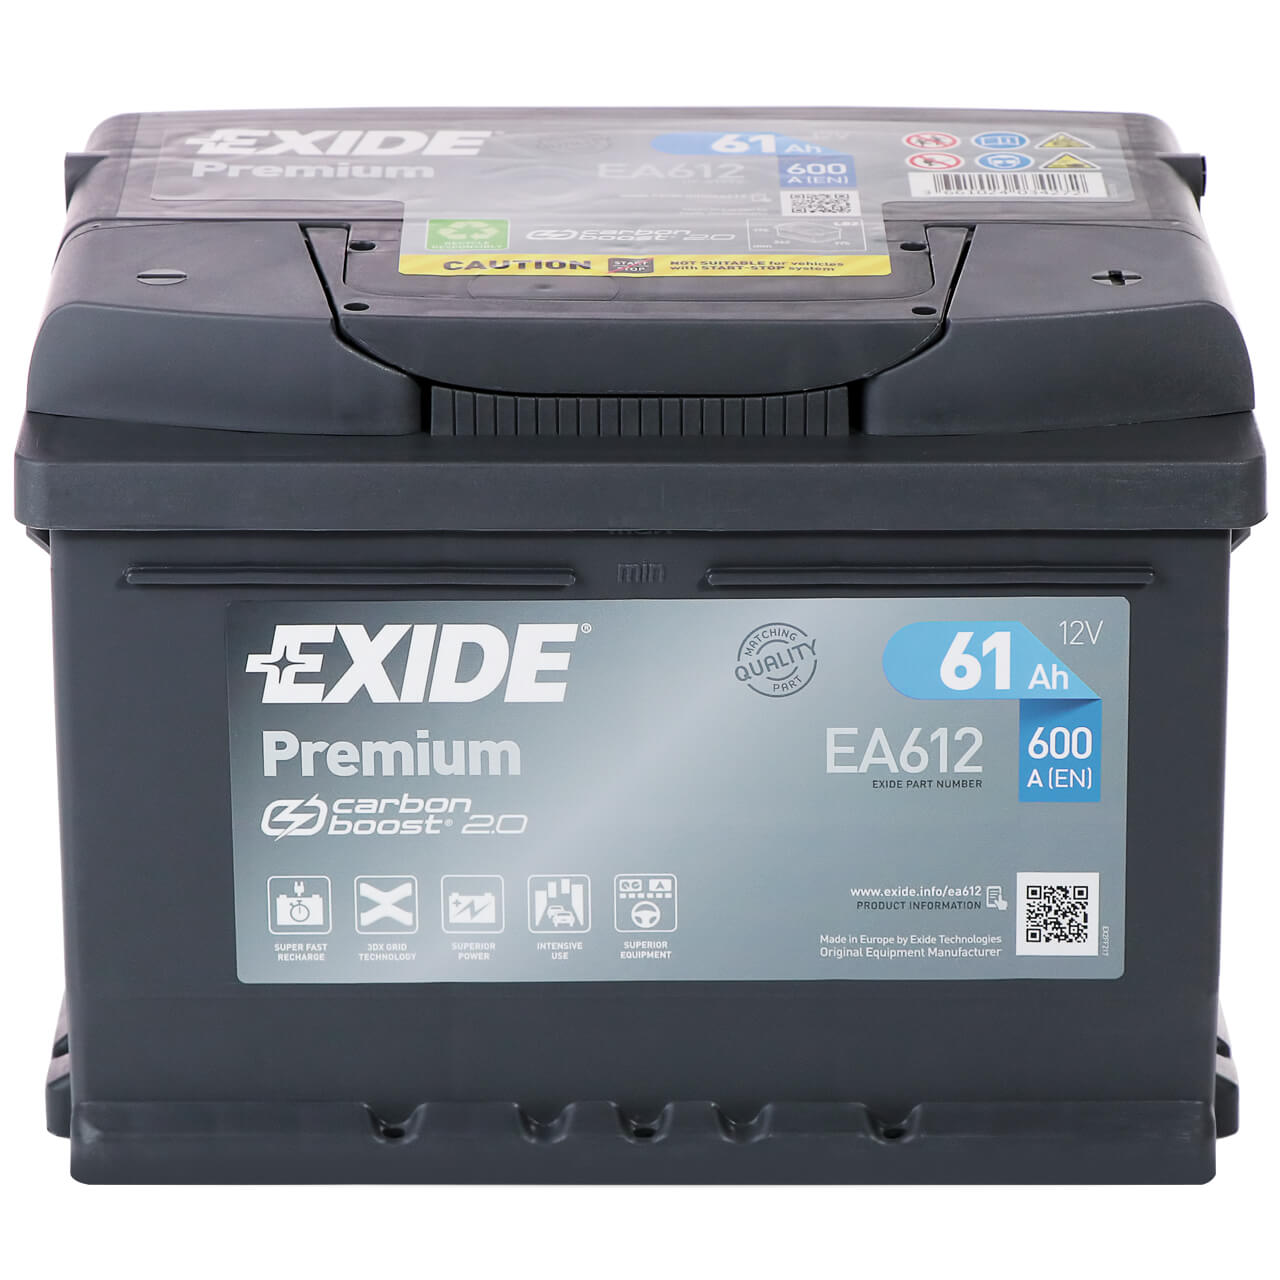 Exide Premium Carbon Boost EA612 12V 61Ah 600A/EN